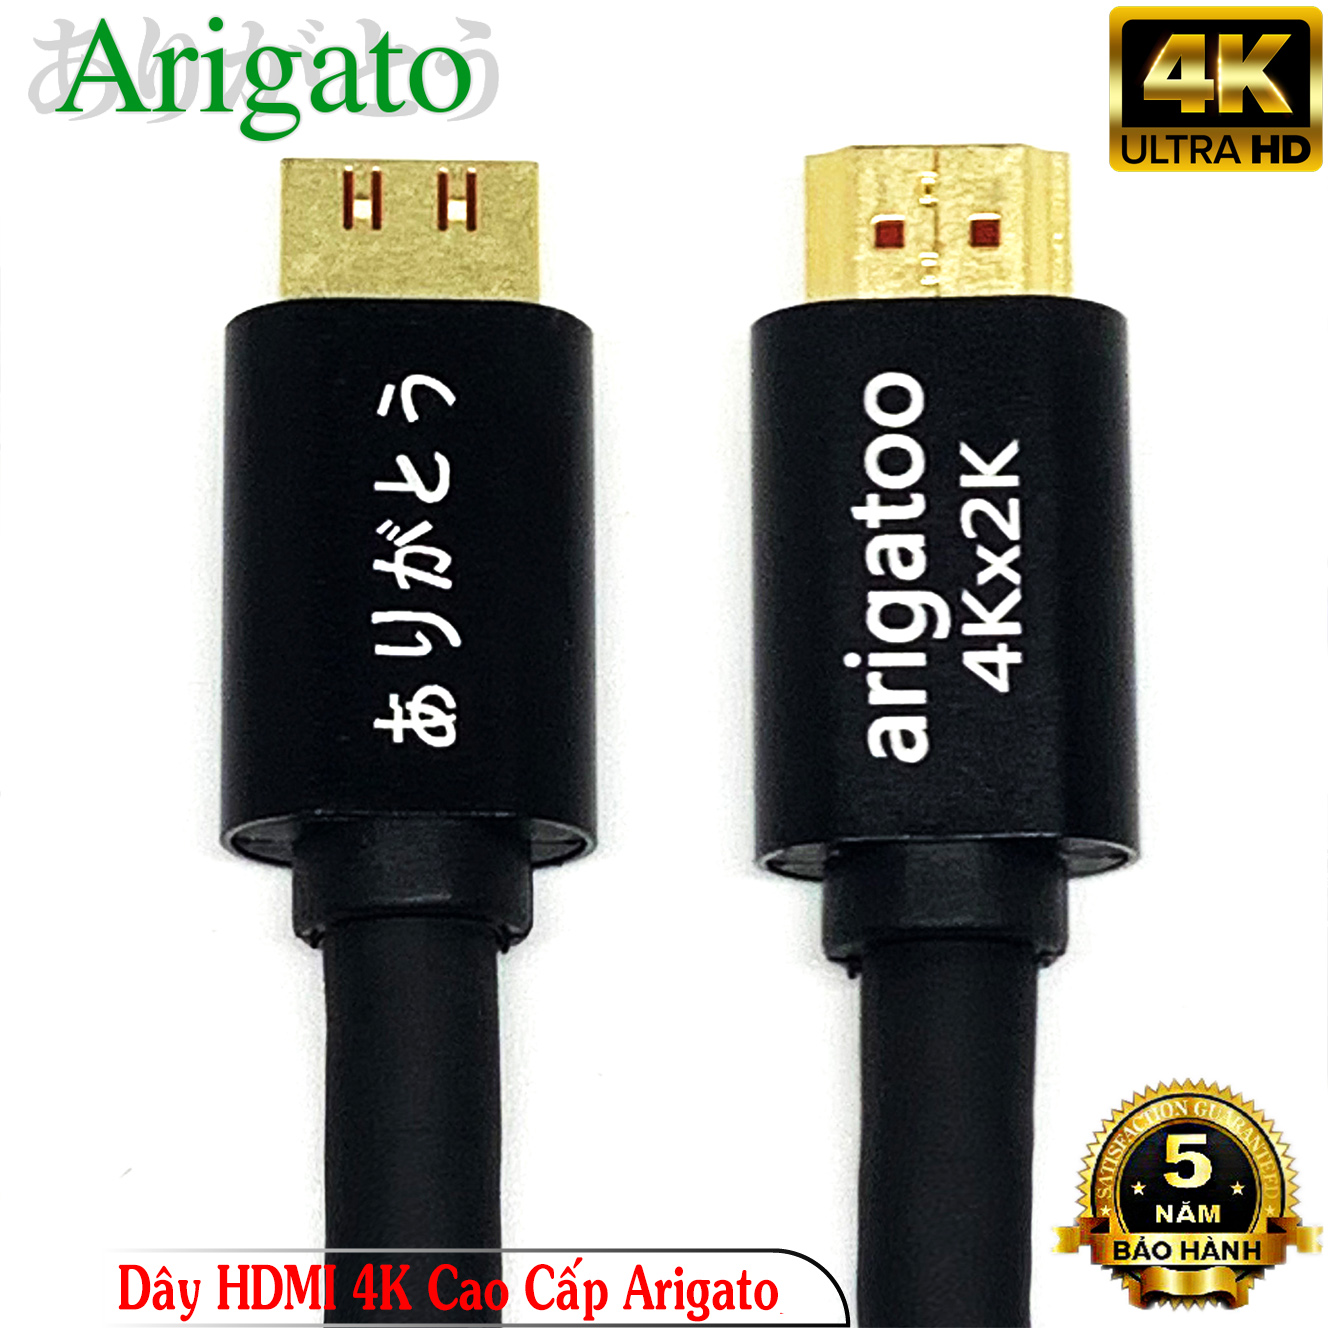 Dây HDMI 10M Arigatoo Chuẩn 4K Xịn